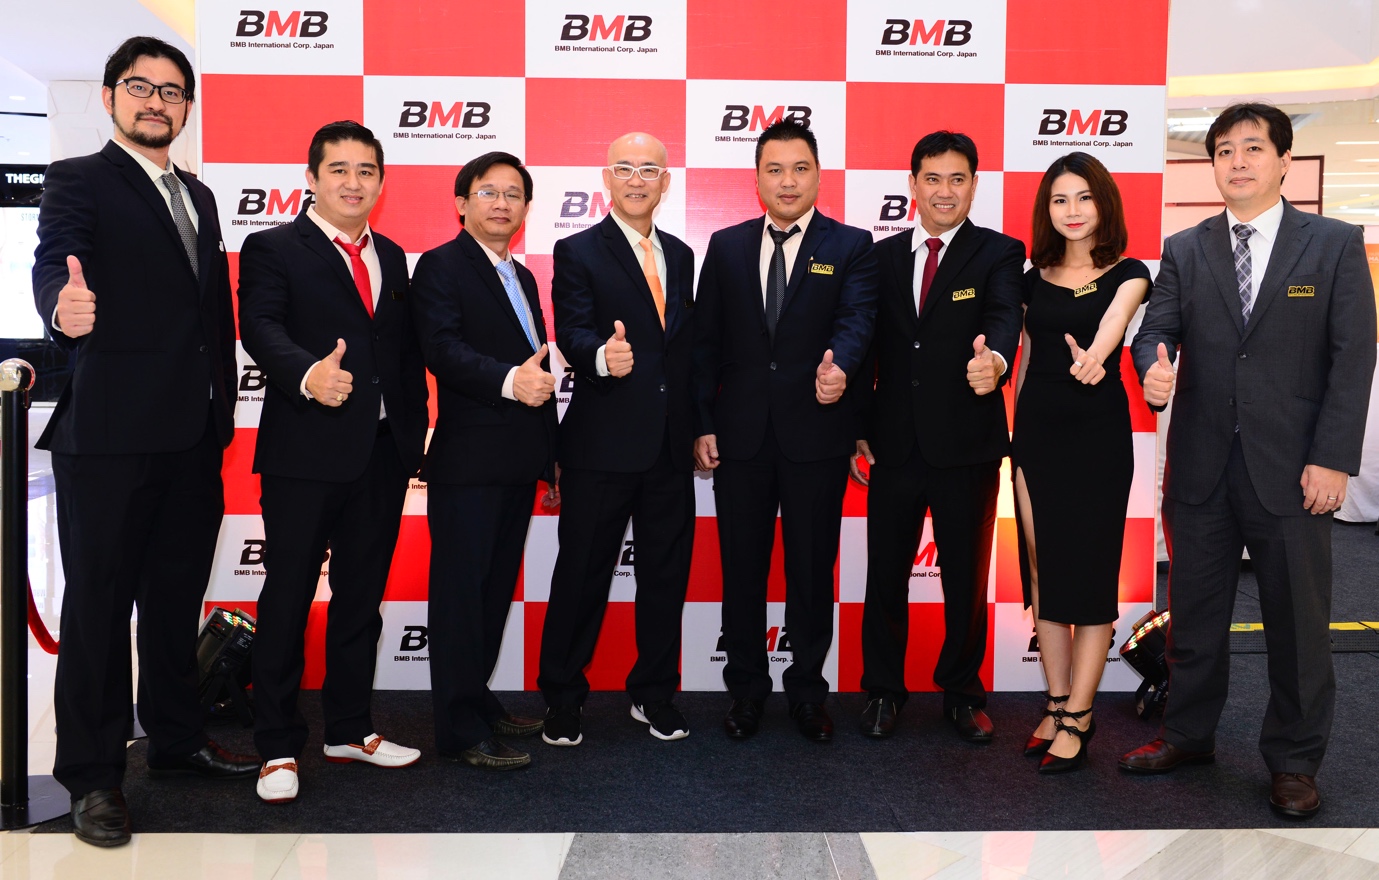 BMB Nhật Bản ra mắt dòng sản phẩm BMB Karaoke Home Series tại Việt Nam